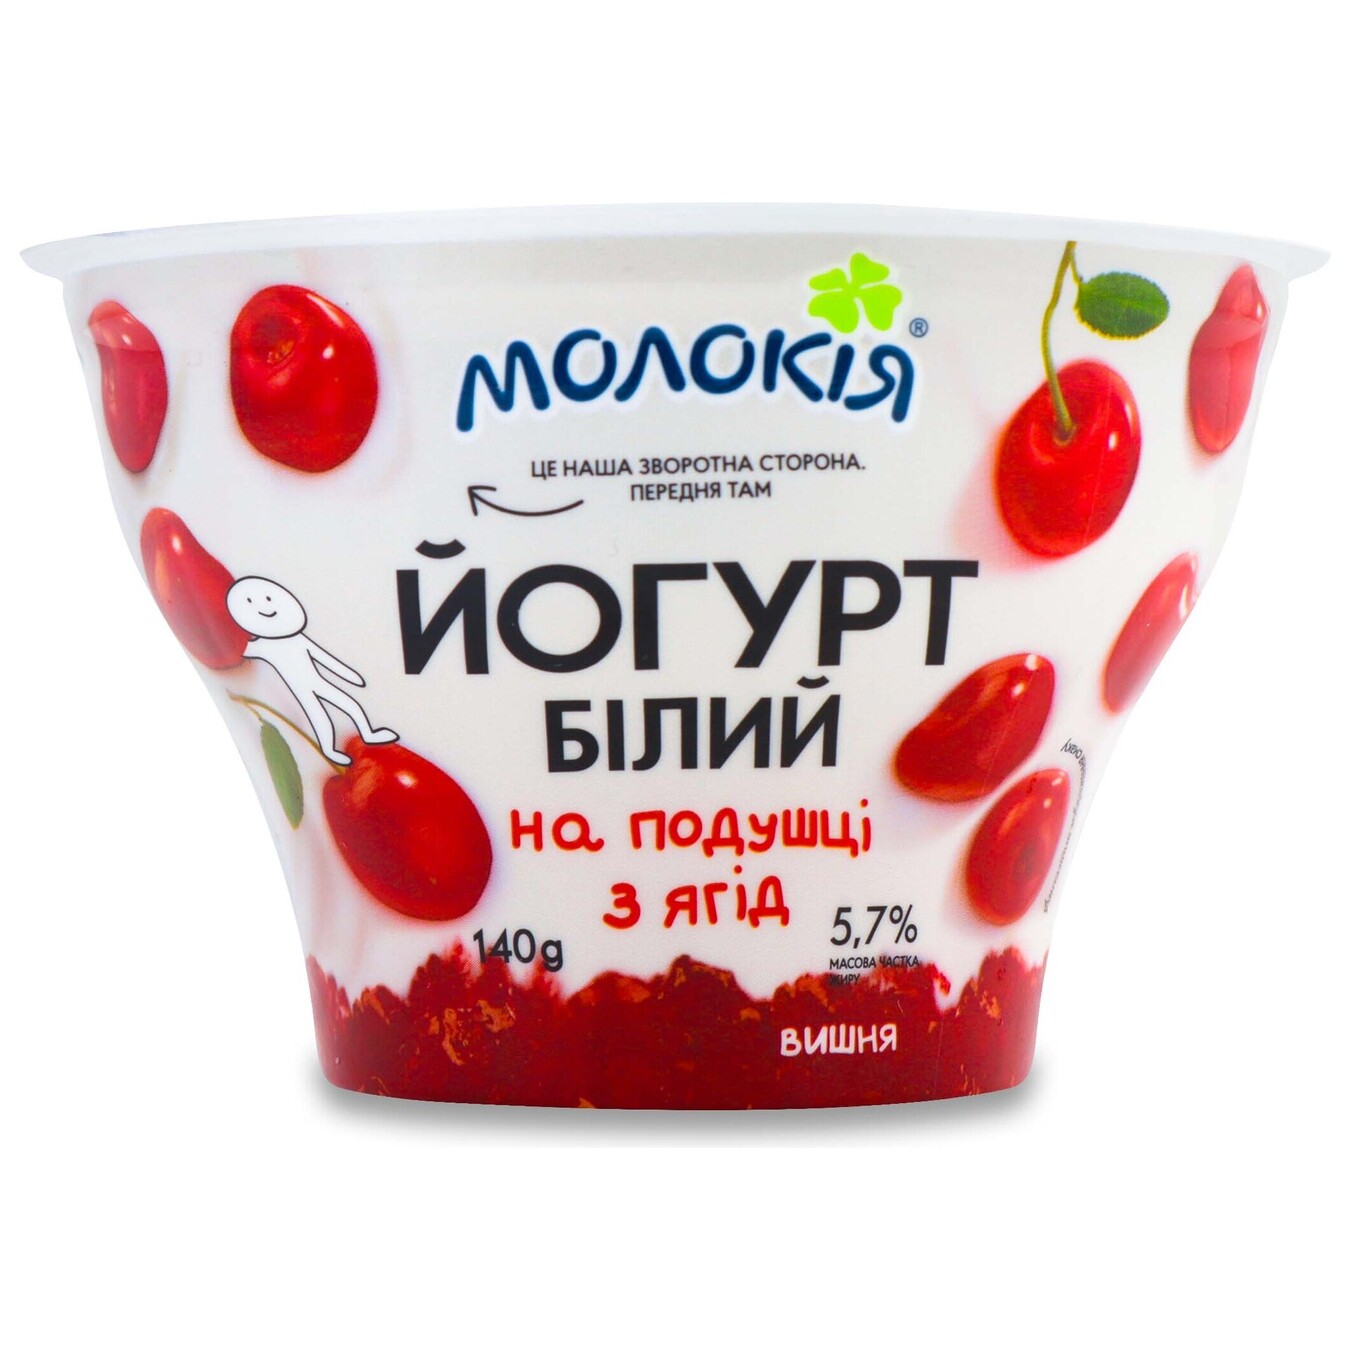 Йогурт Молокия белый на ягодной подушке вишня 5,7% 140г